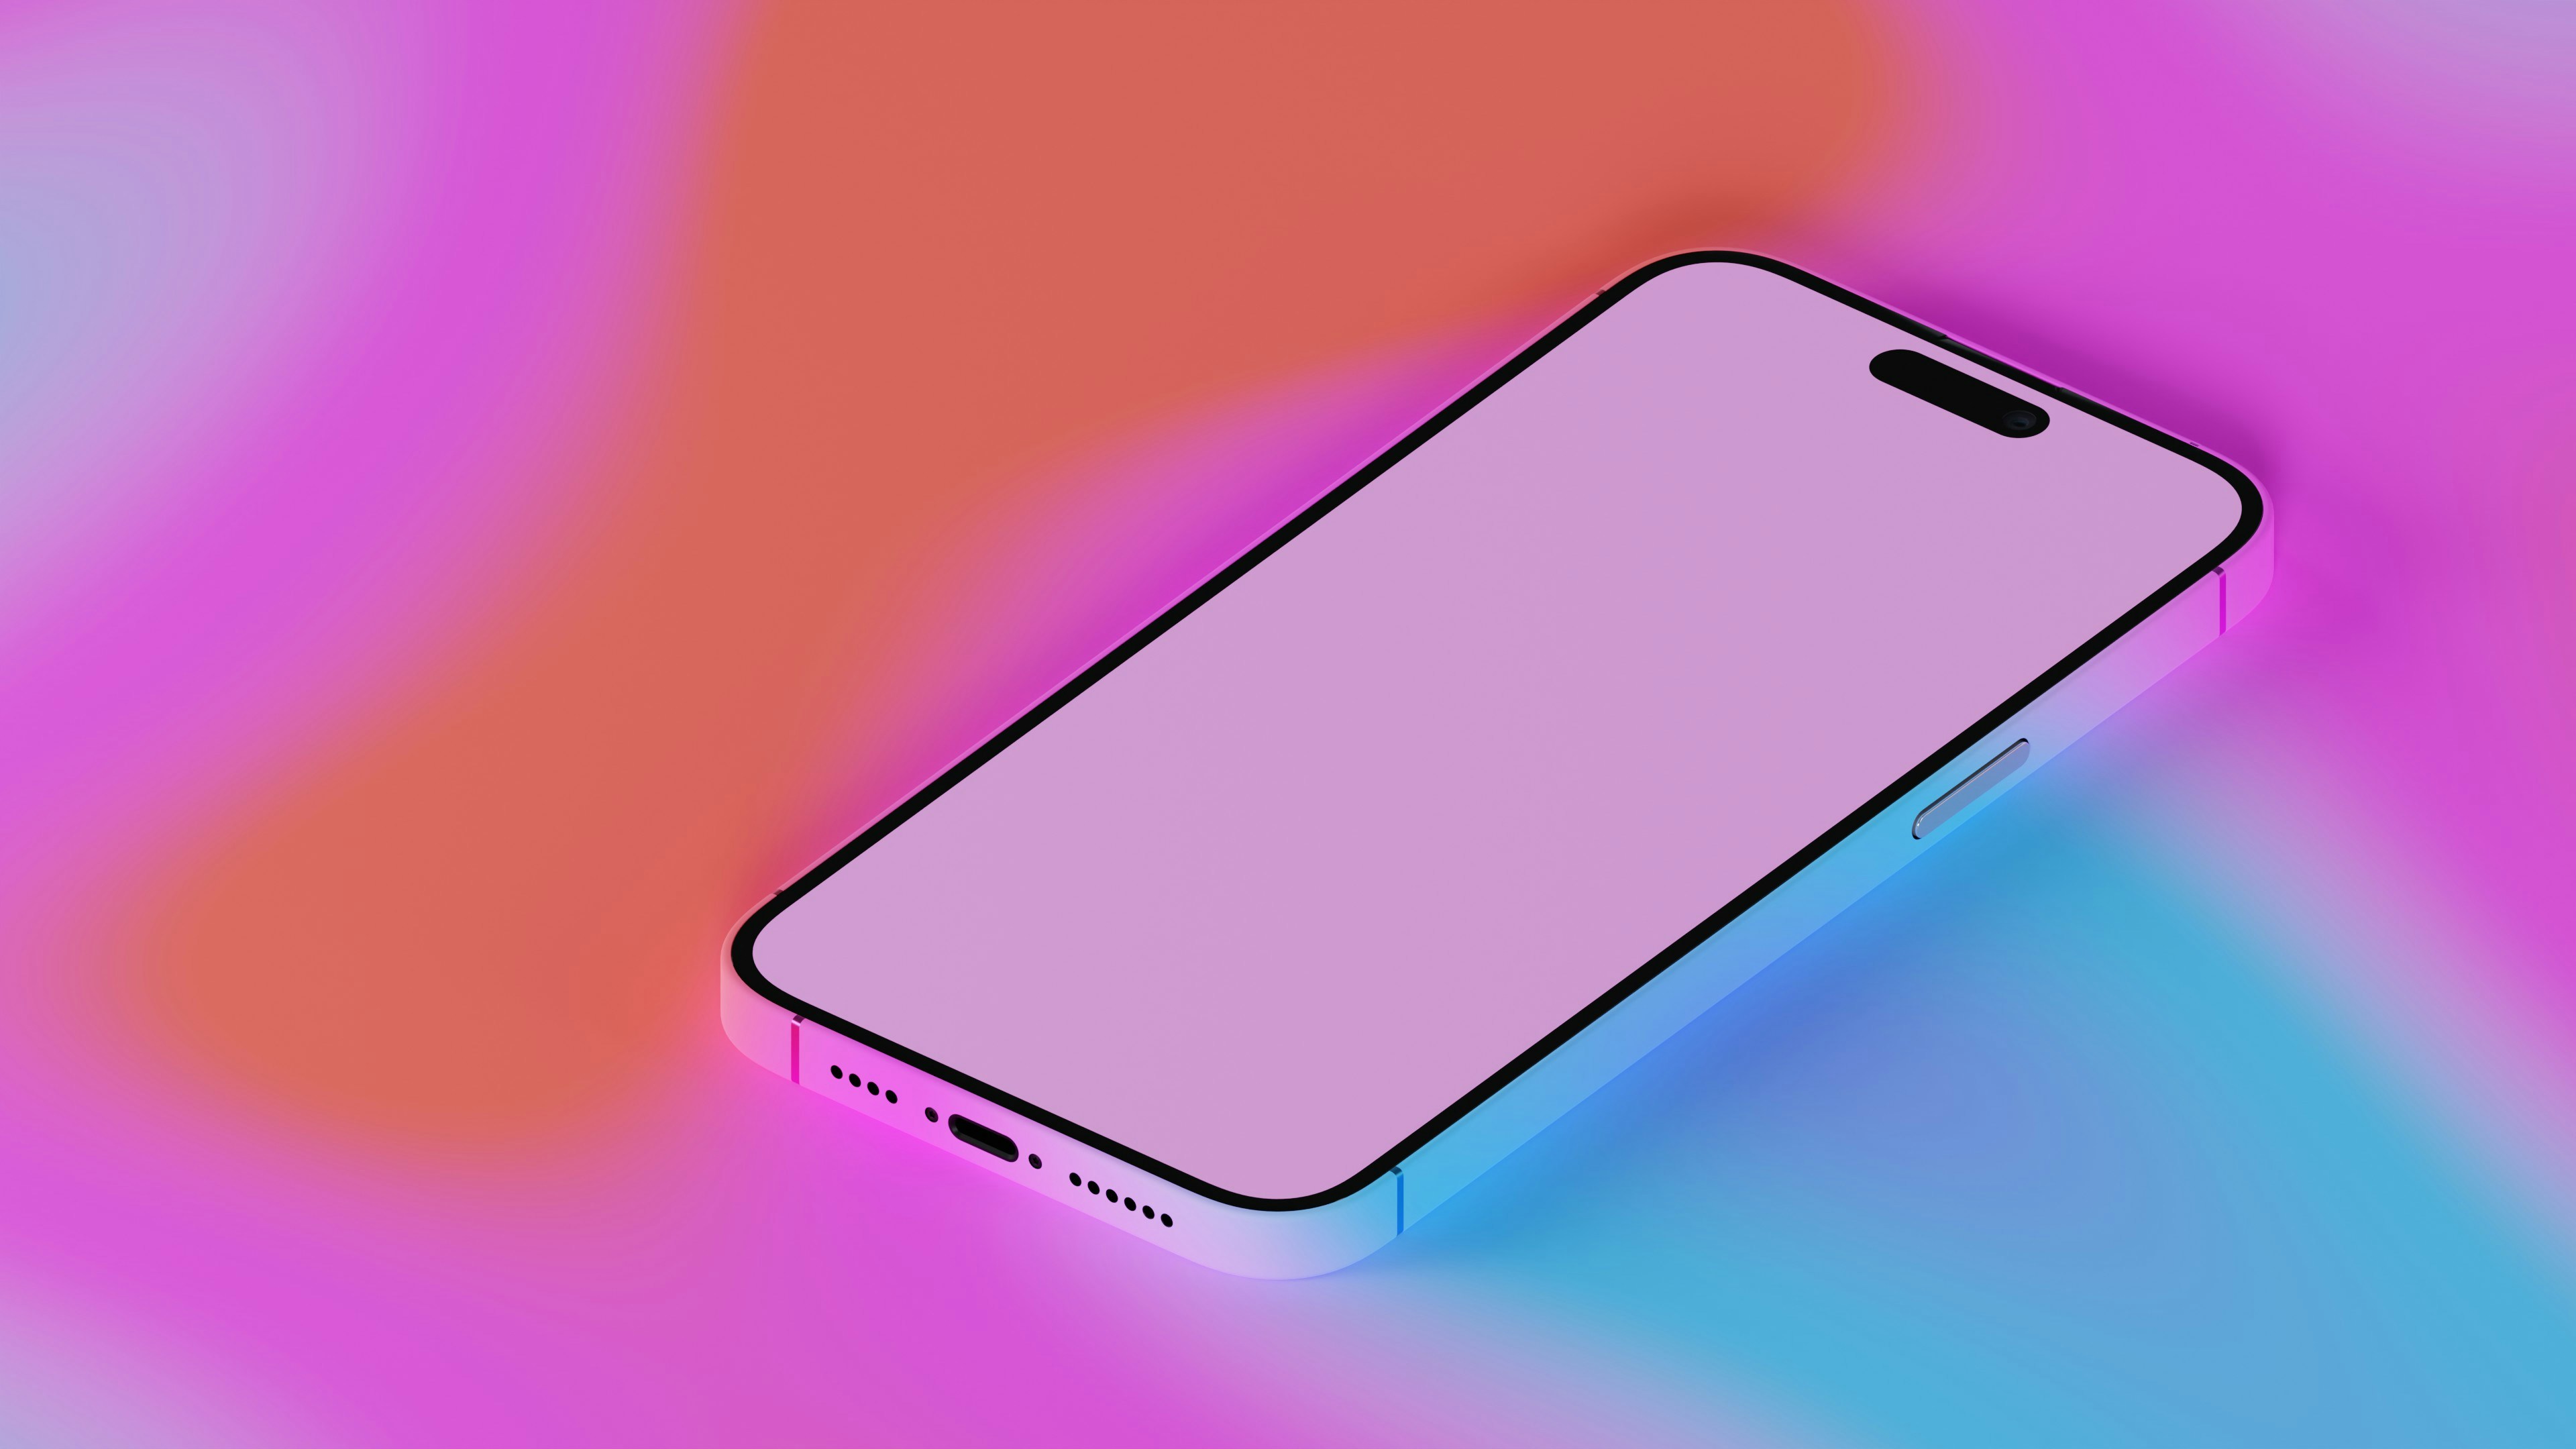 알록달록한 배경에 핑크색 화면의 스마트폰이 올려있다.